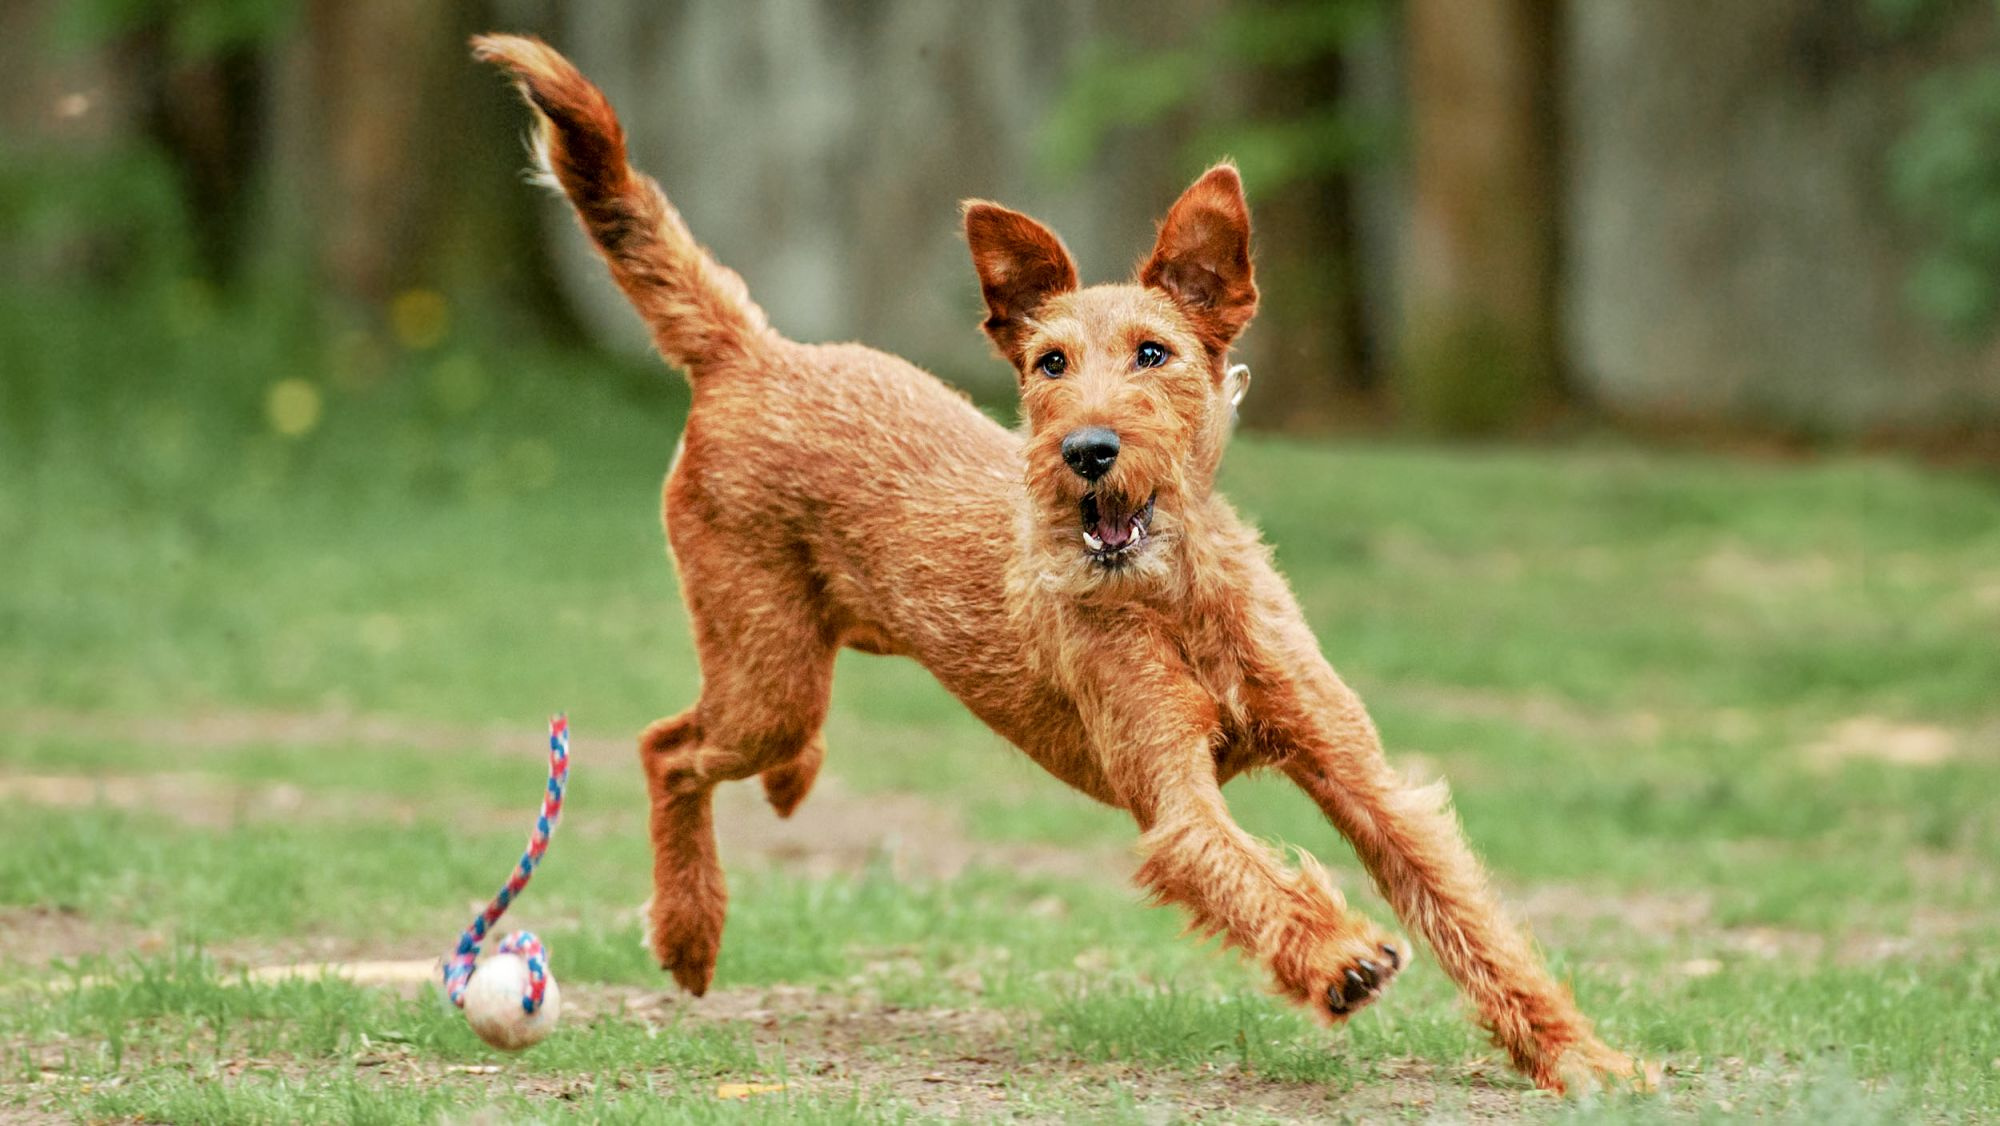  Irish Terrier adulto corriendo en un jardín con un juguete.